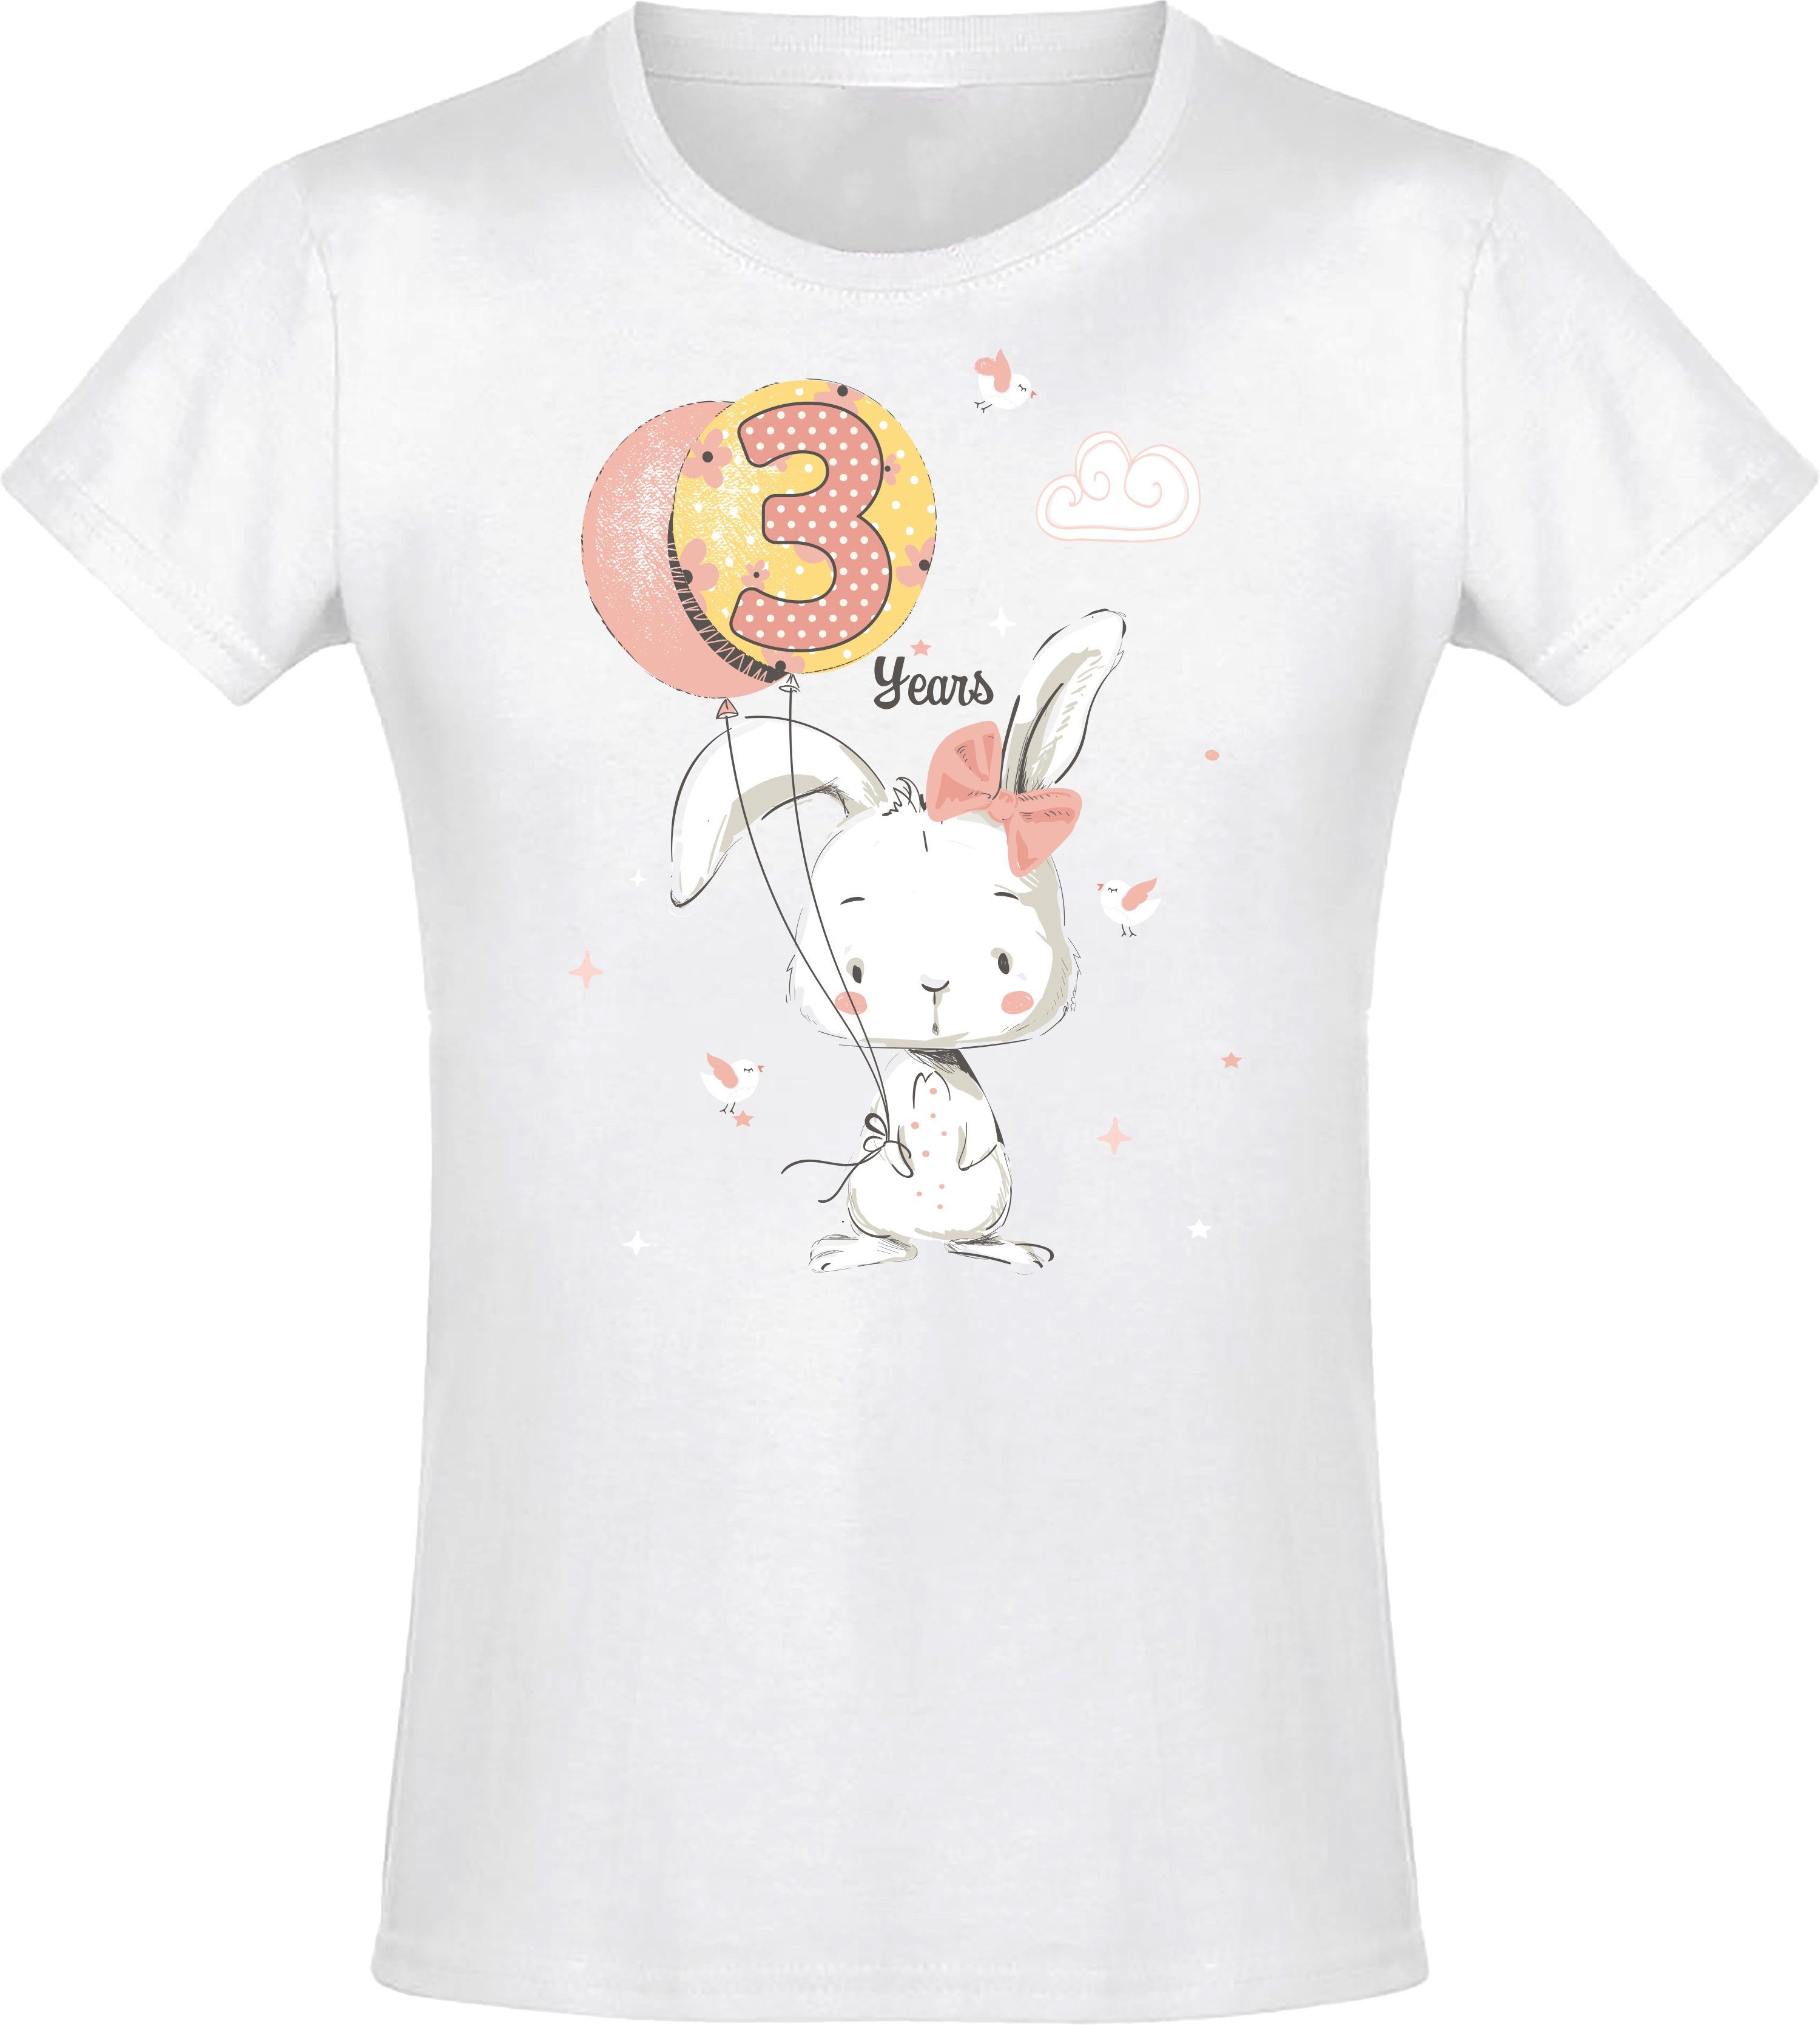 Geburstagsgeschenk aus 3 Print-Shirt Weiß für : Baumwolle Mädchen Hase Siebdruck, hochwertiger Baddery mit Jahre